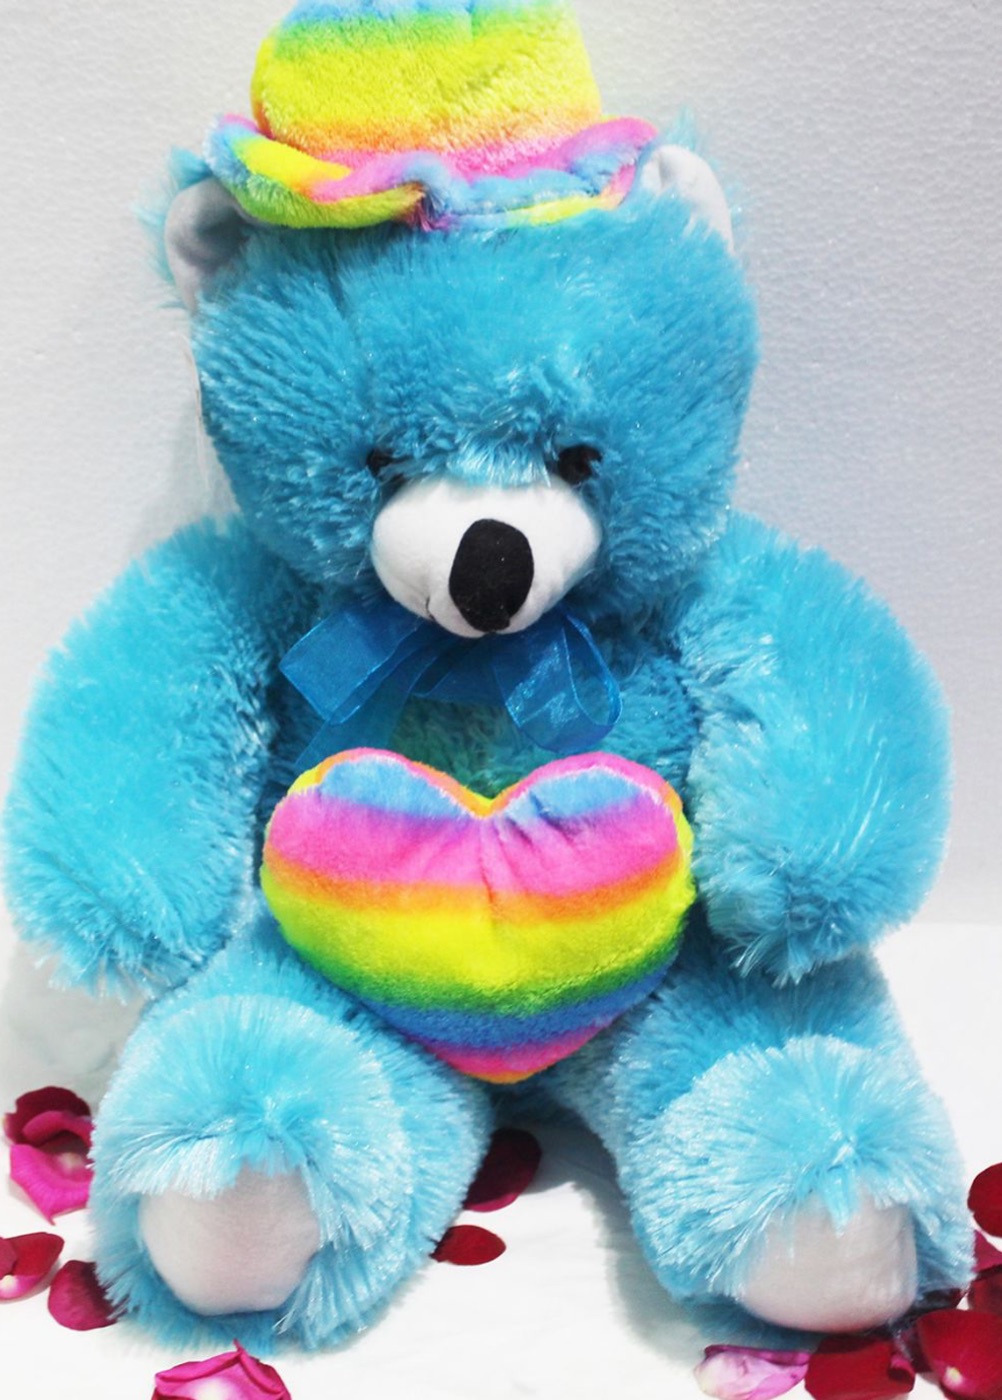 teddy bear in blue colour